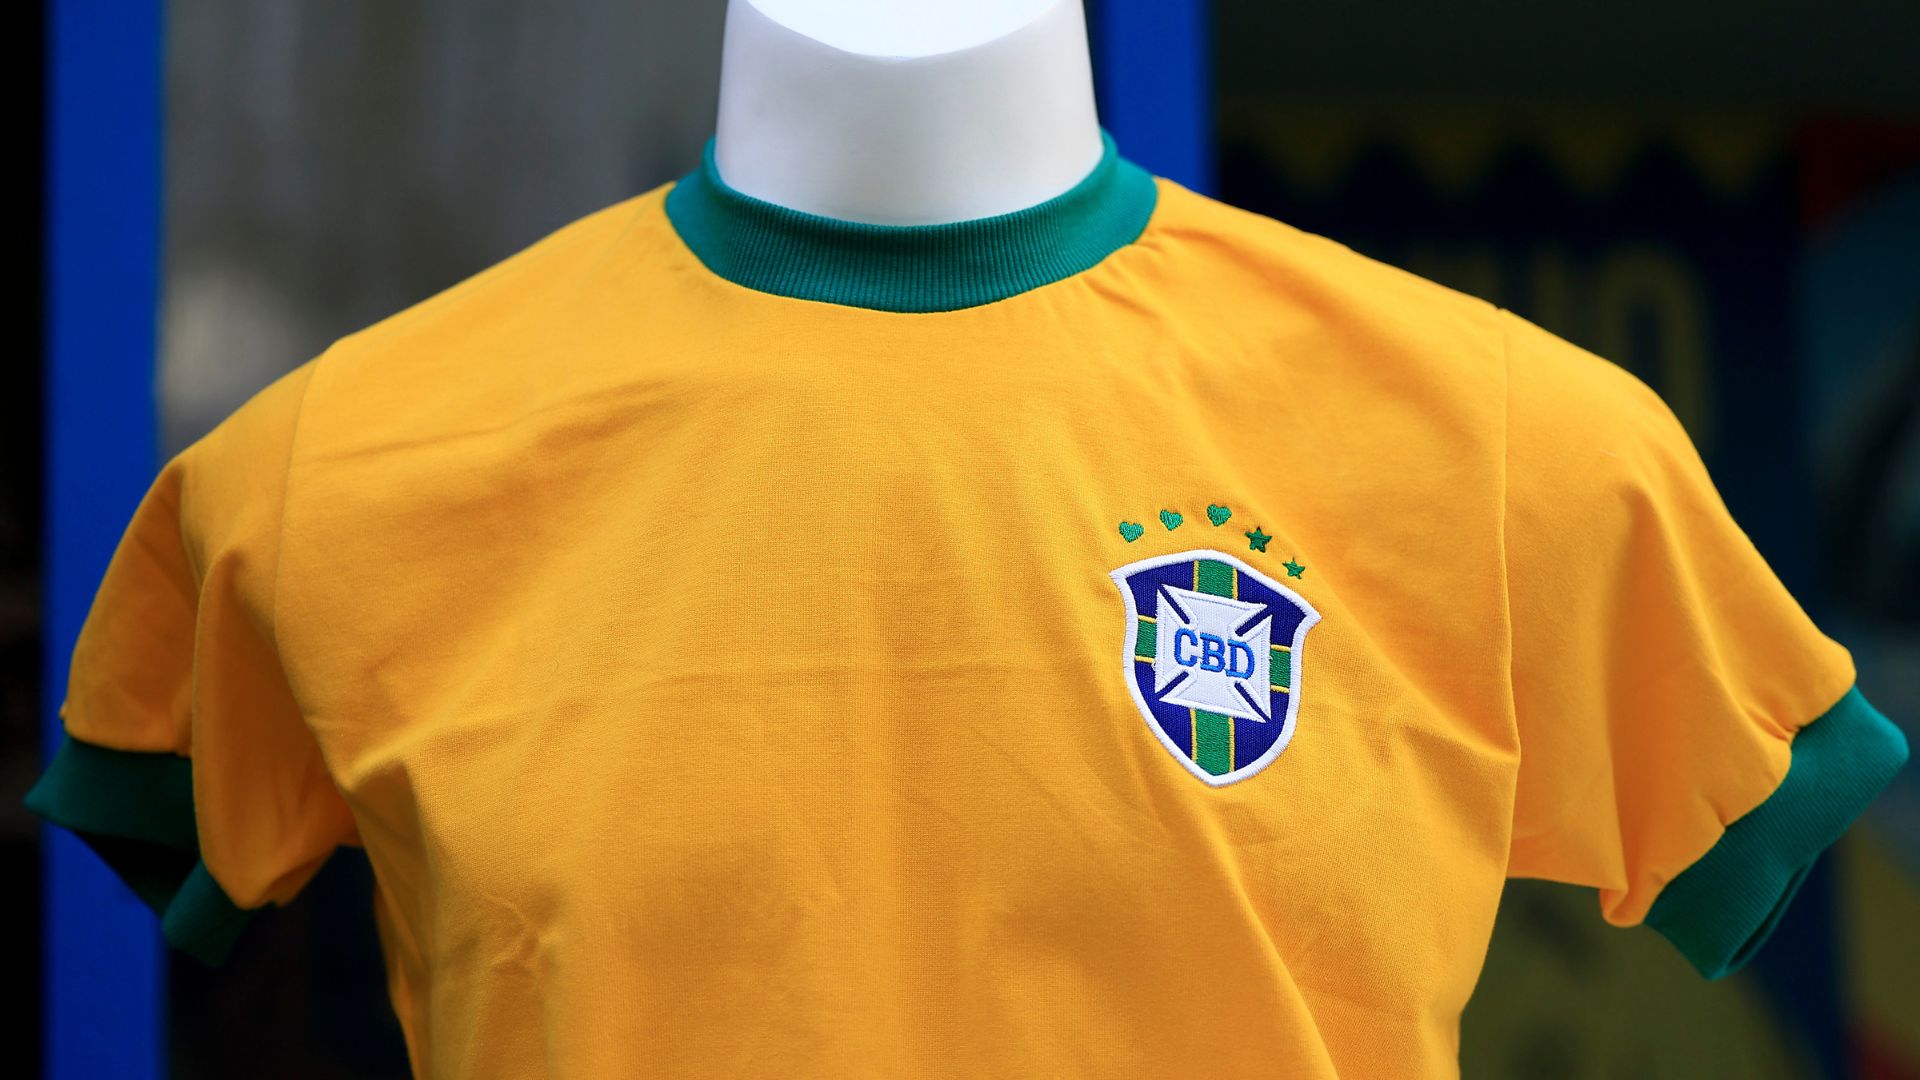 Camisa em homenagem a Pelé, exibida em evento da Conmebol